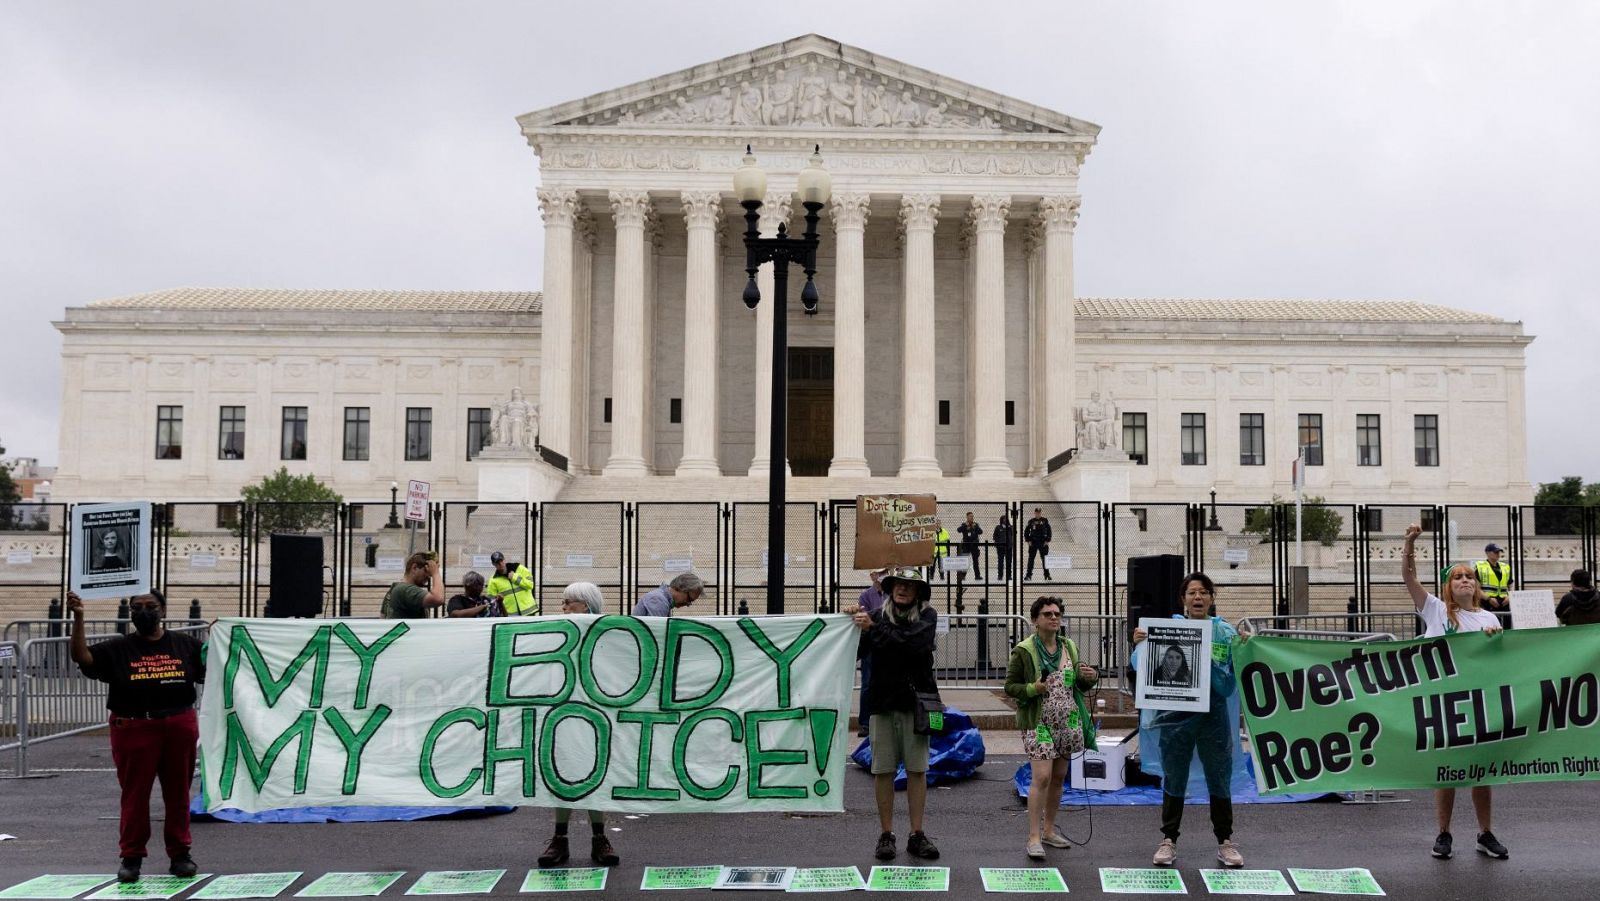   Derecho al aborto anulado: impacto en mujeres estadounidenses  Derecho al aborto en EE.UU. en peligro tras fallo histórico del Tribunal Supremo